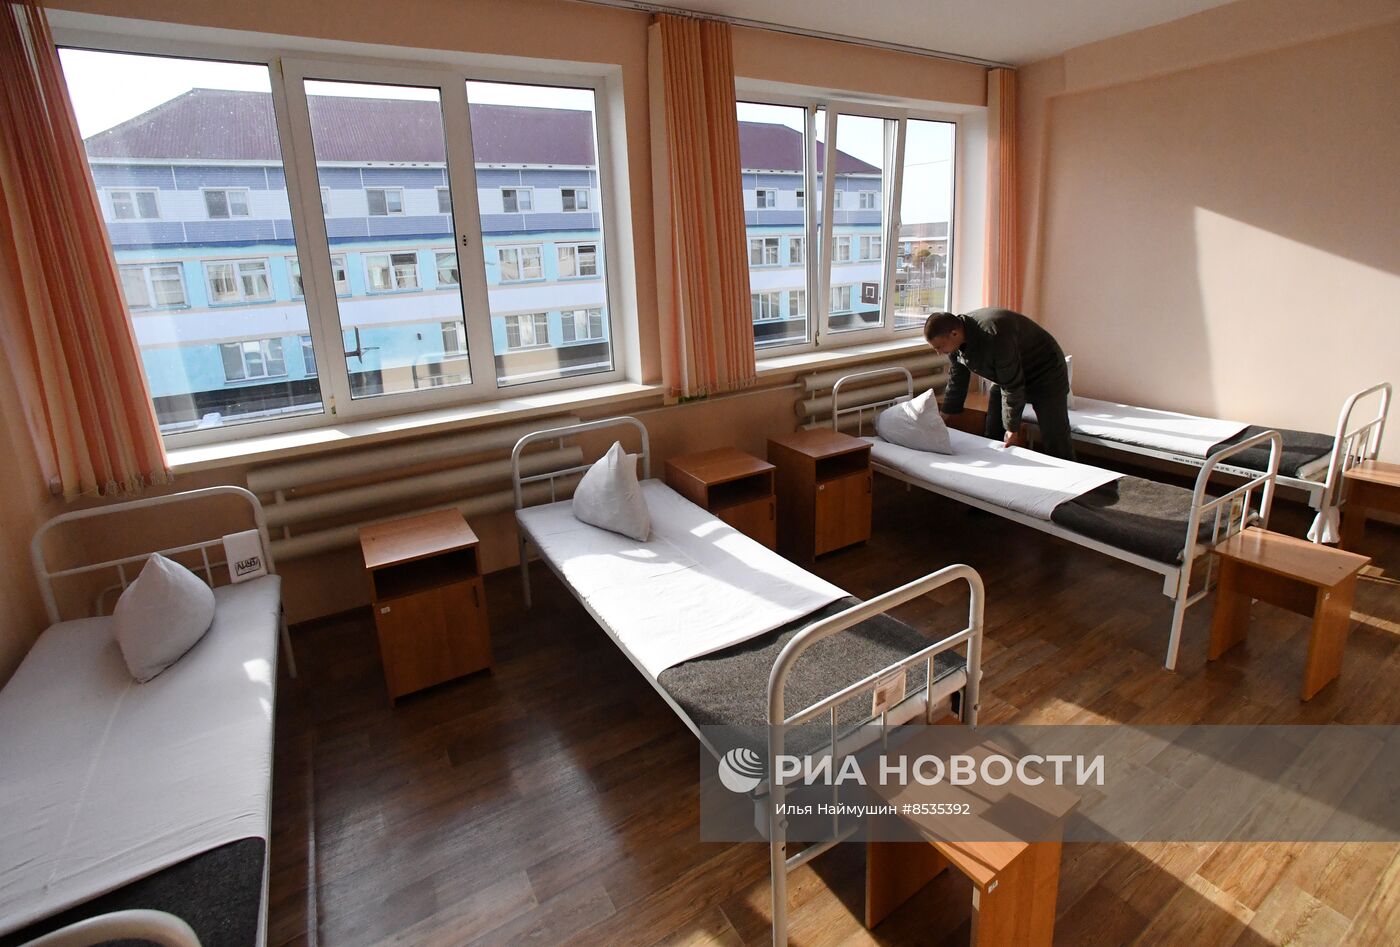 Реабилитационный центр для осужденных в Красноярском крае